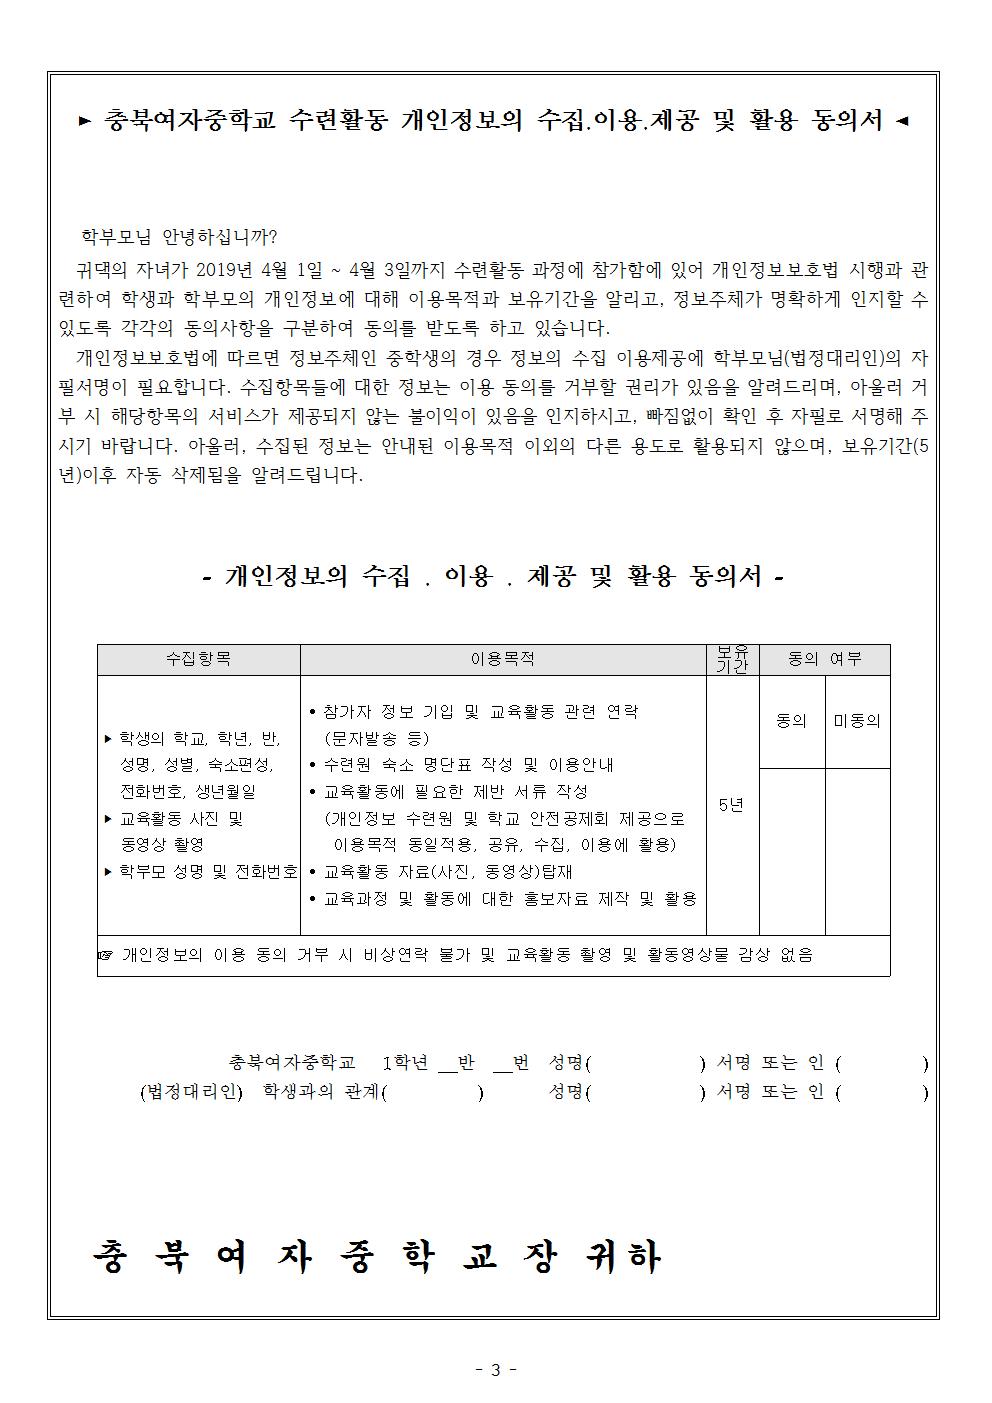 2019. 1학년 수련활동 안내(경비포함) 및 개인정보동의서 가정통신문003